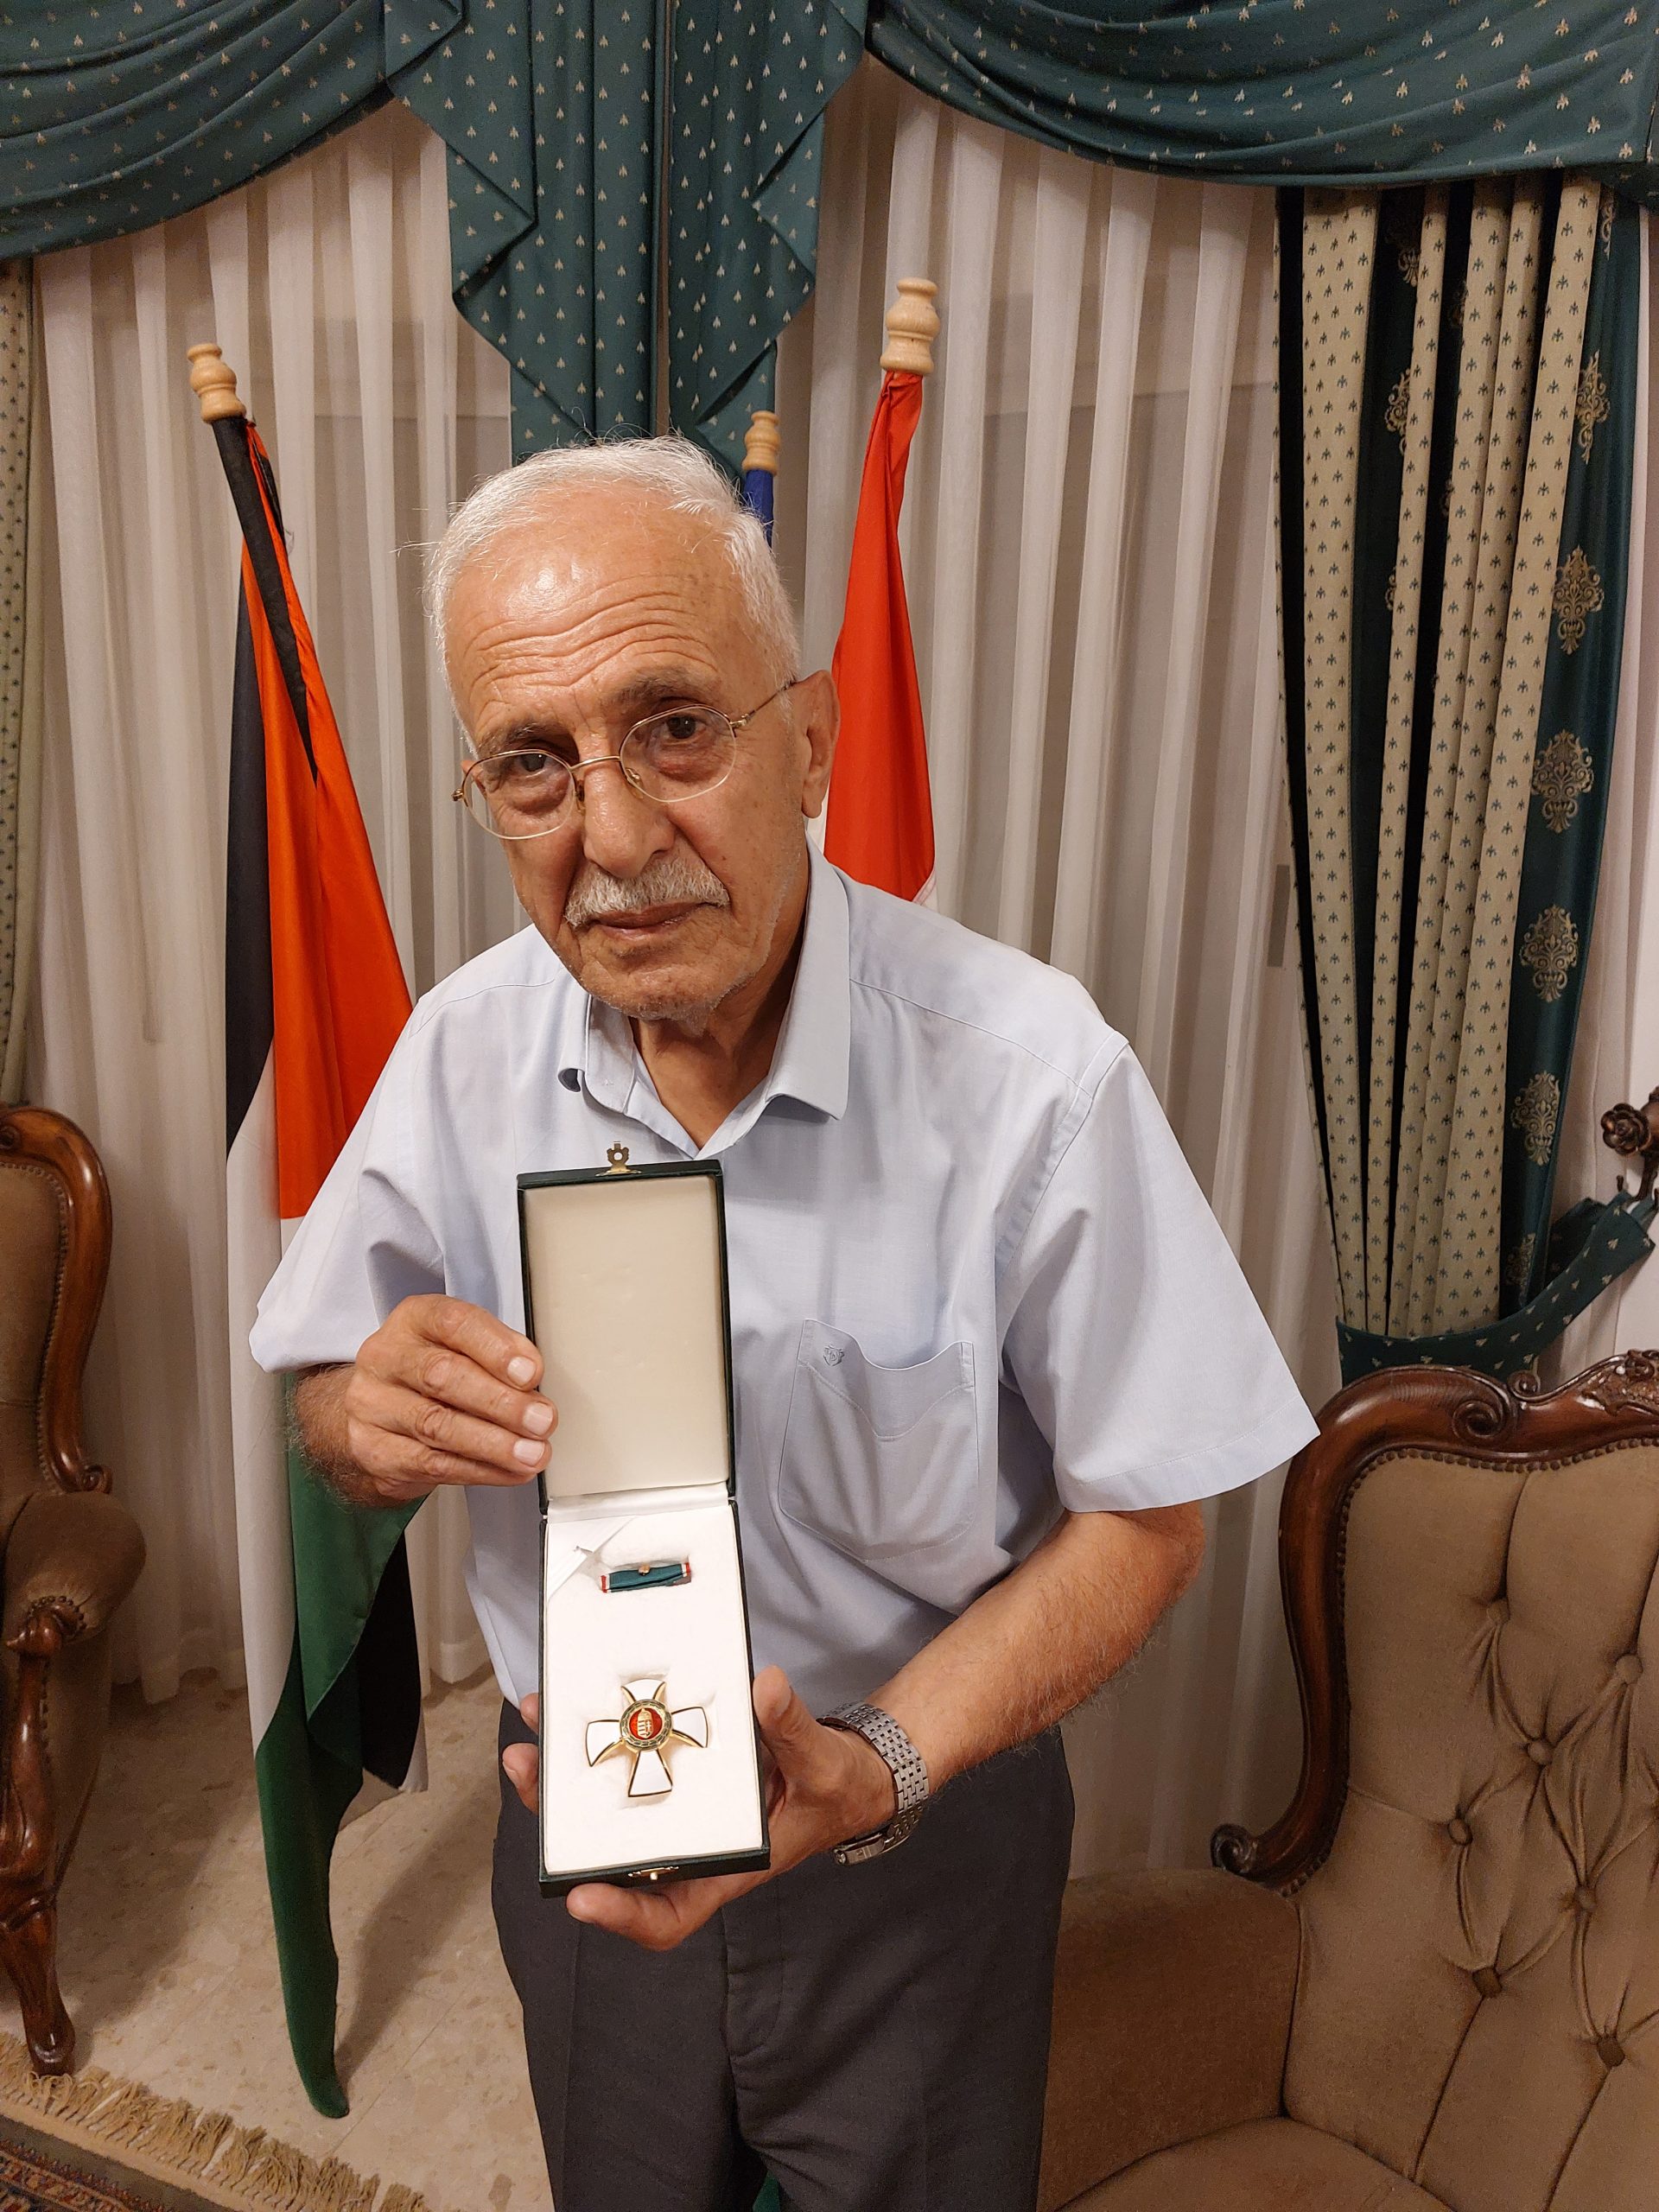 Bericht aus Palästina I. - Interview mit Dr. Khamis Nassar, Honorarkonsul von Ungarn in Palästina